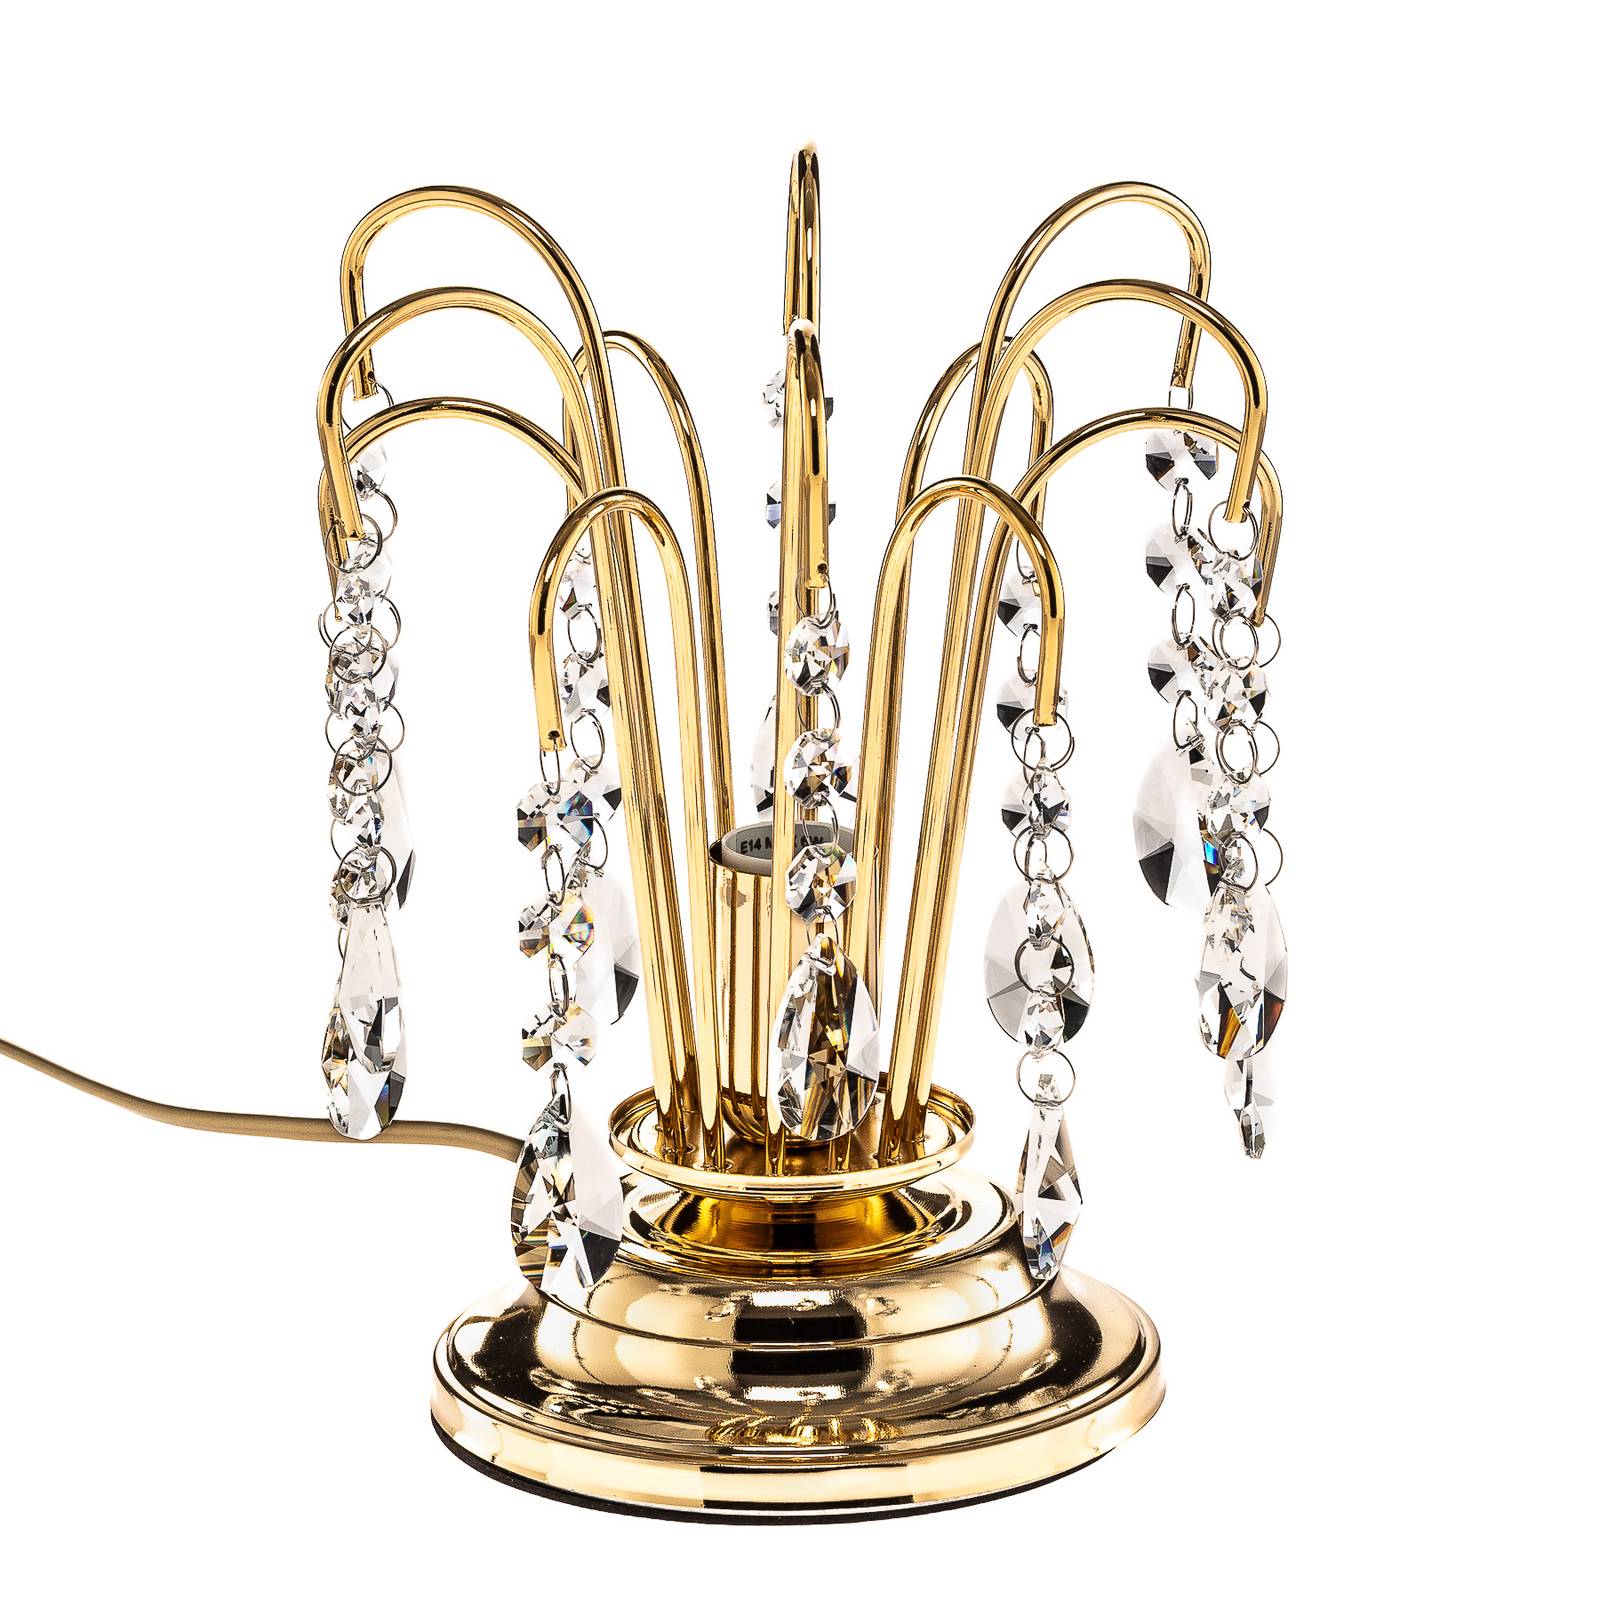 ONLI Tischlampe Pioggia mit Kristallregen, 26cm, gold